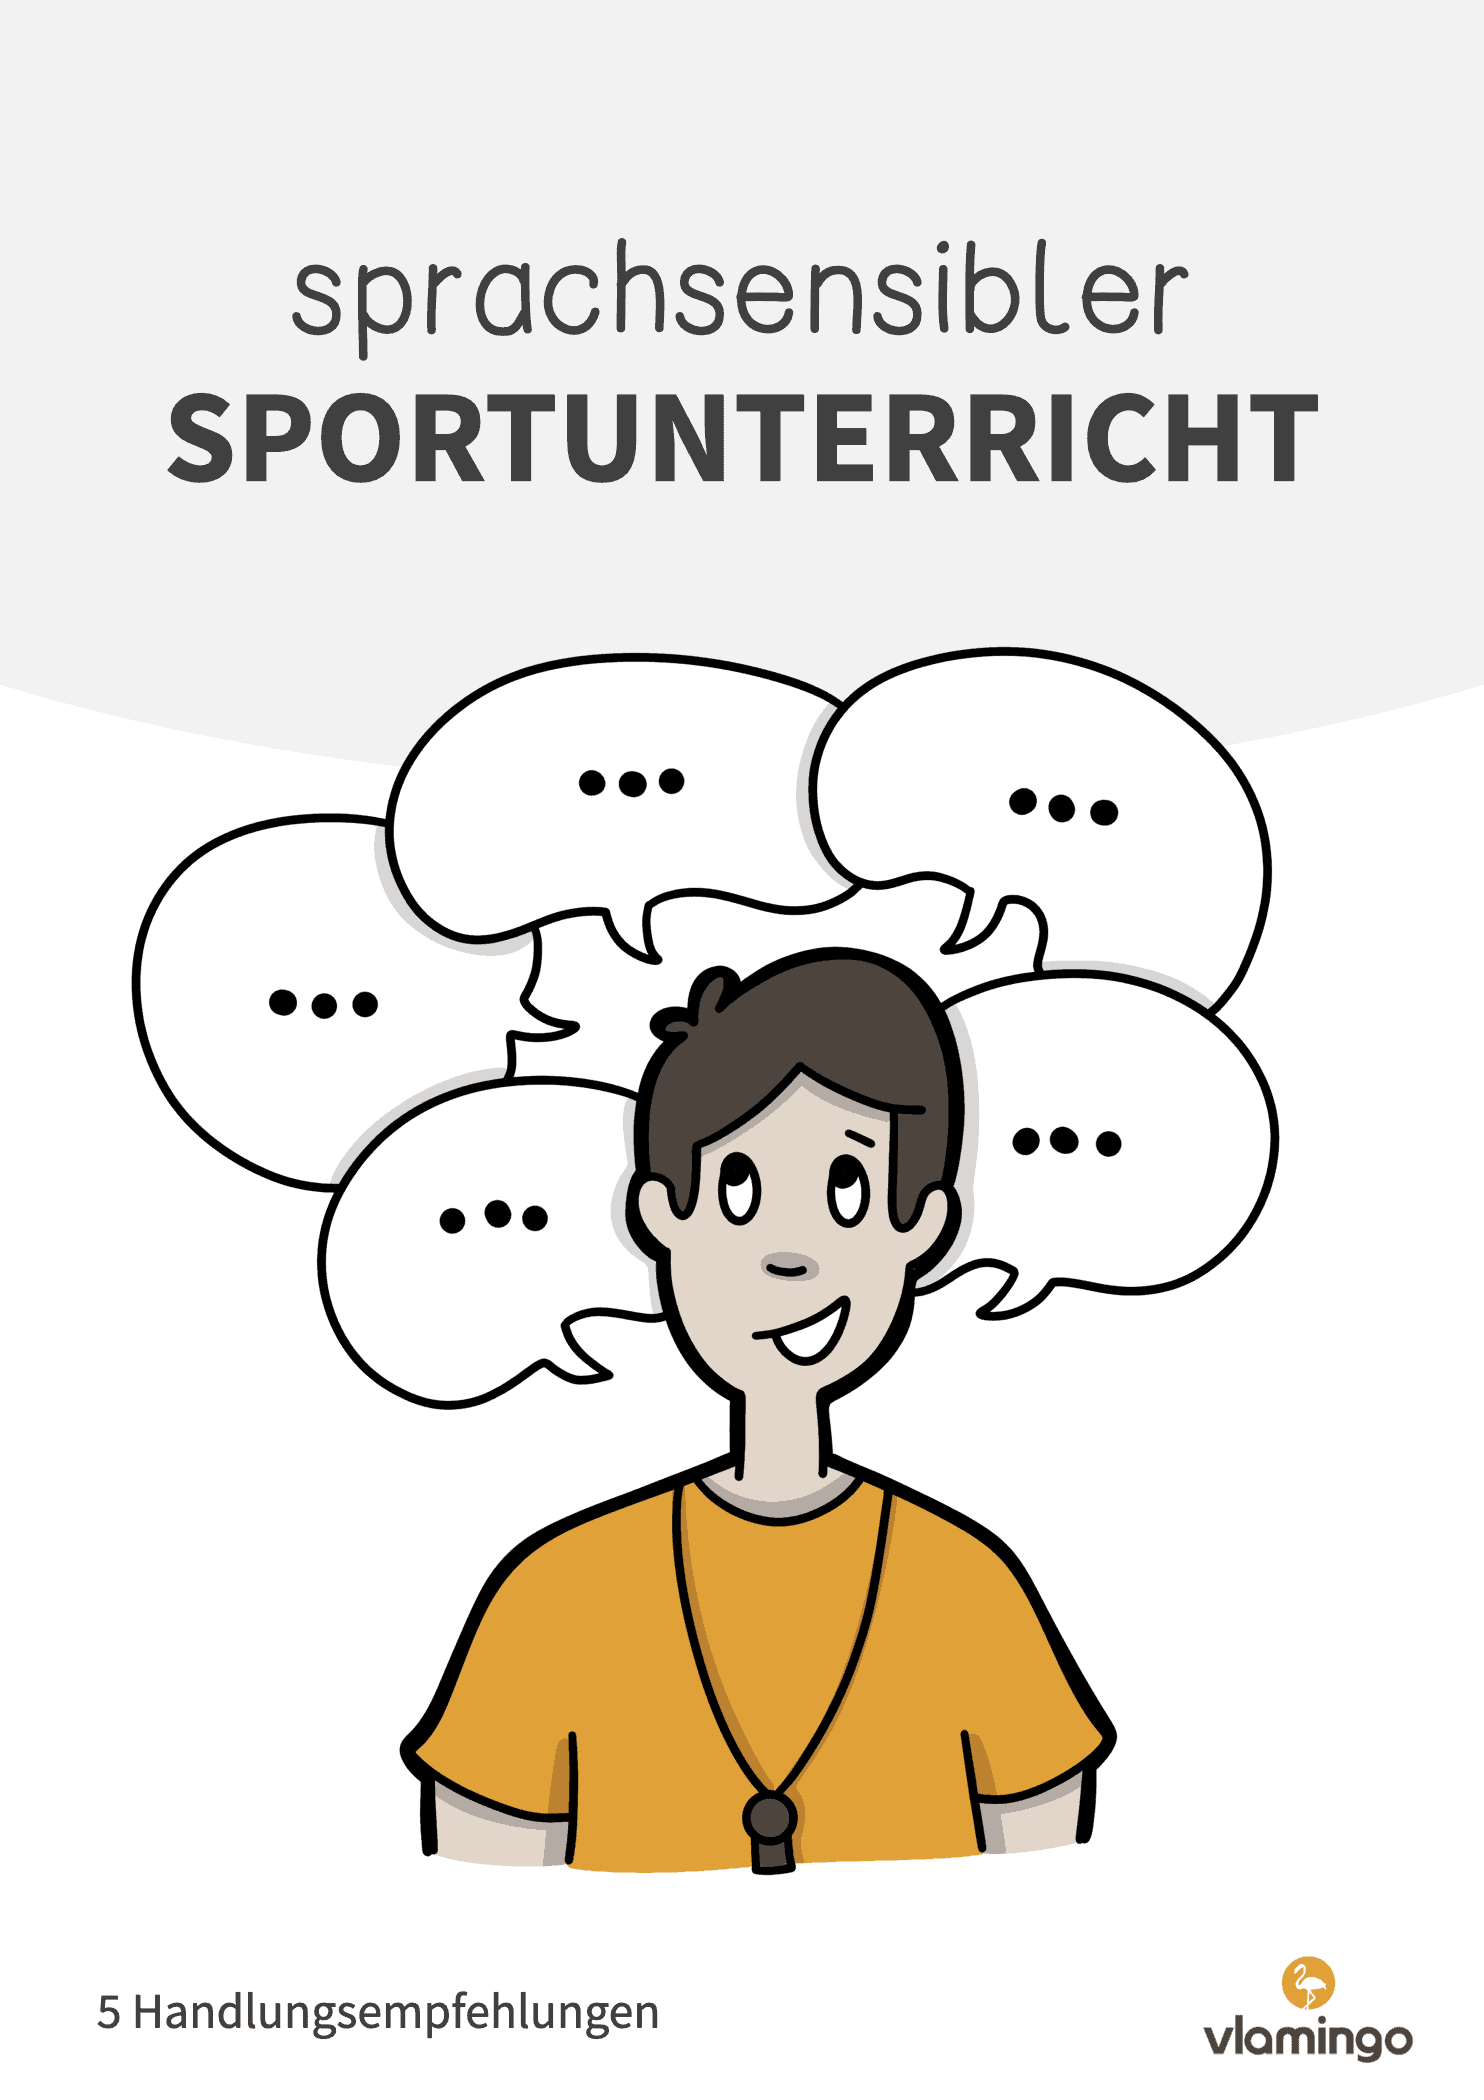 Sprachsensibler Sportunterricht